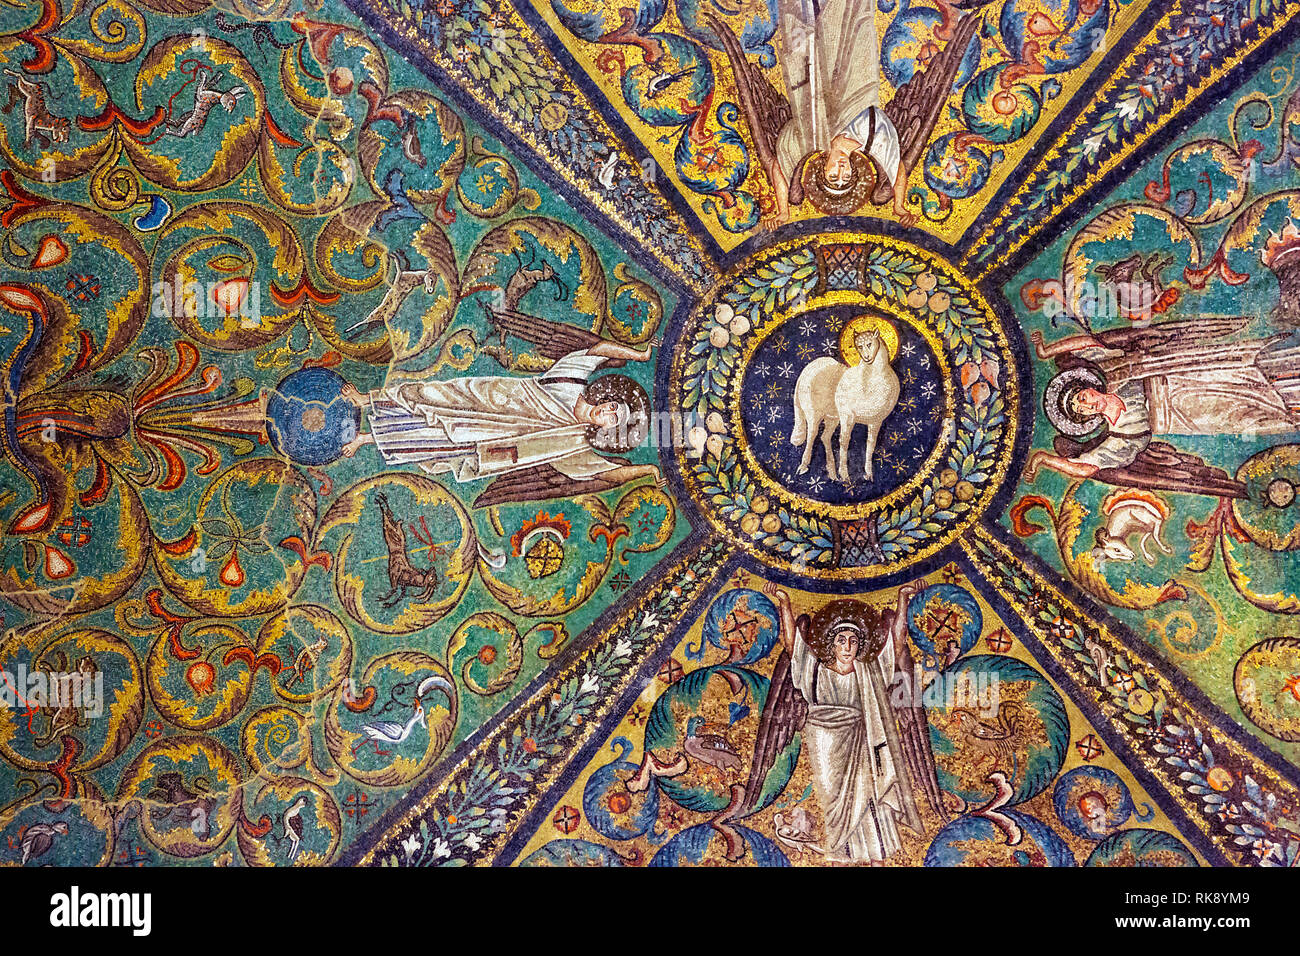 Il soffitto della Basilica di San Vitale a Ravenna, Italia. Dettaglio di antichi mosaici bizantini. Foto Stock